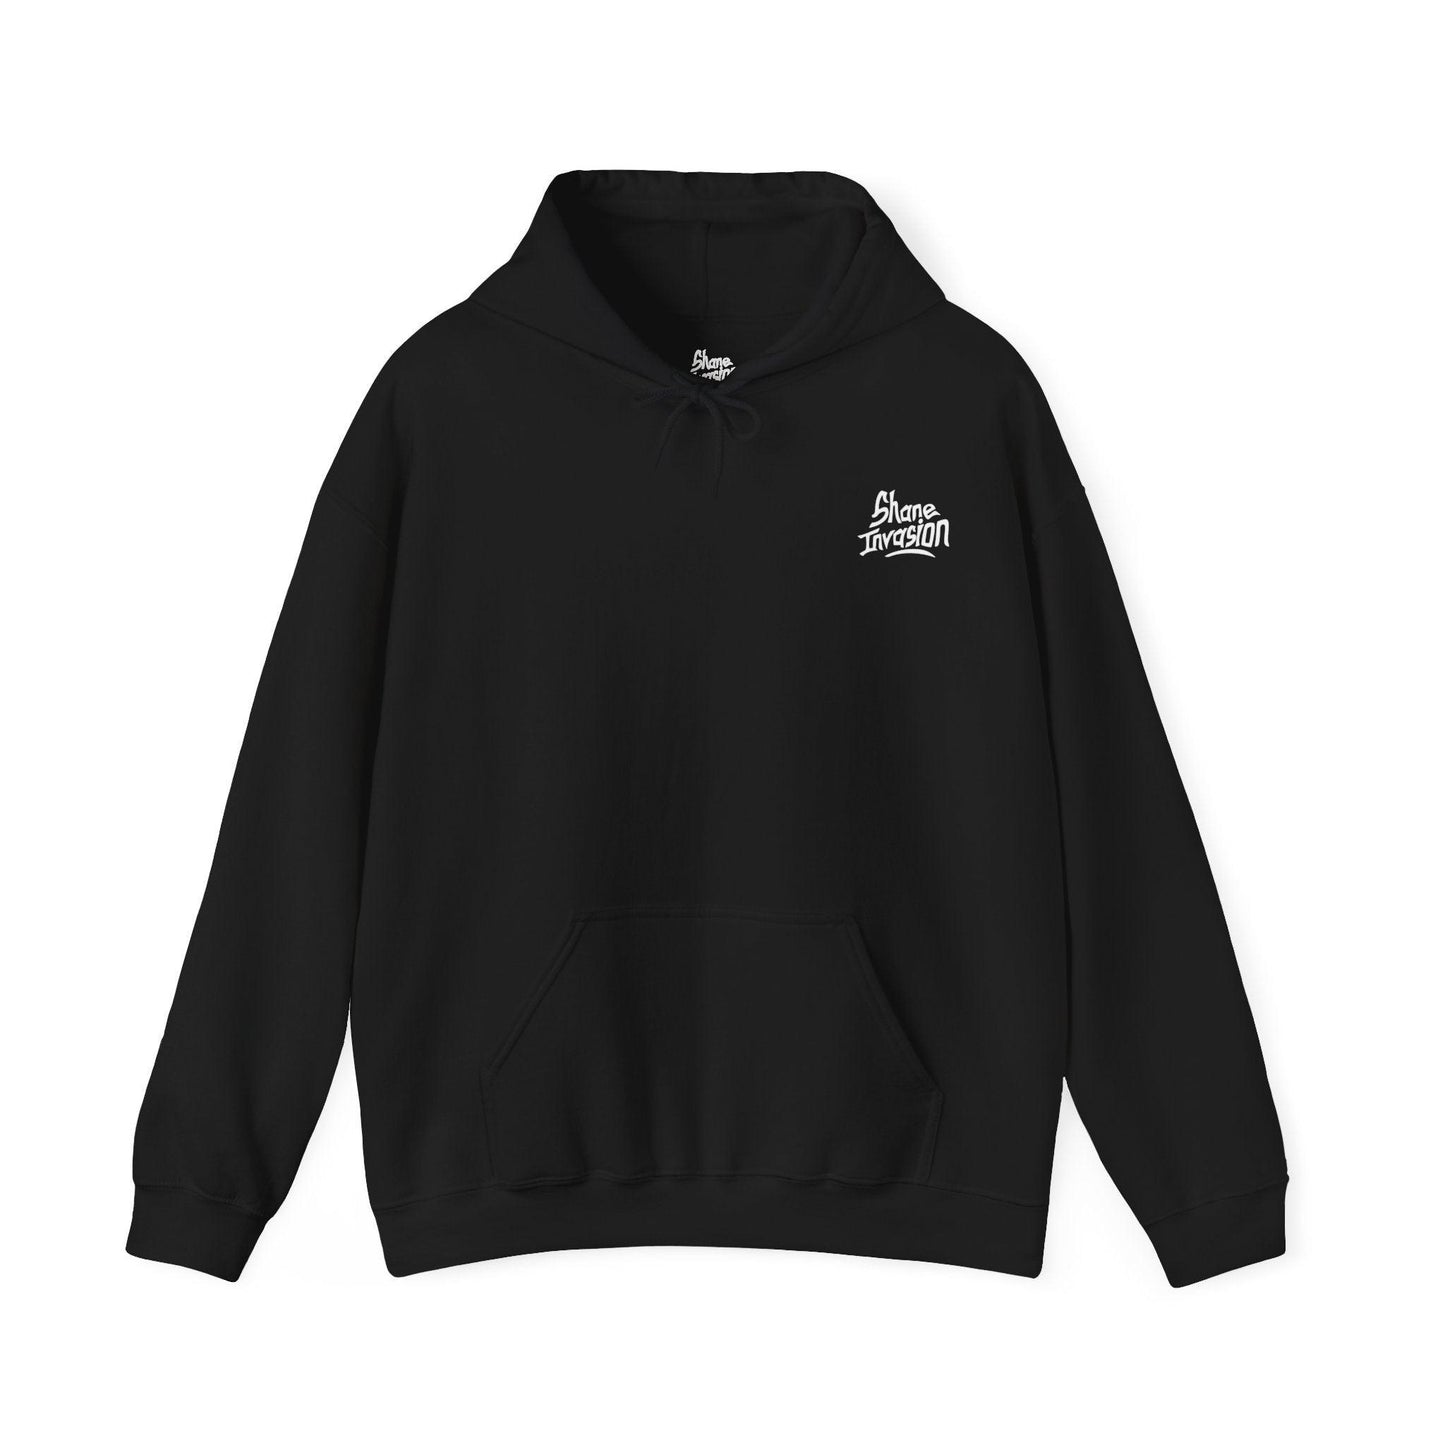 Creampie - Unisex Heavy Blend Hooded Sweatshirt - Shaneinvasion